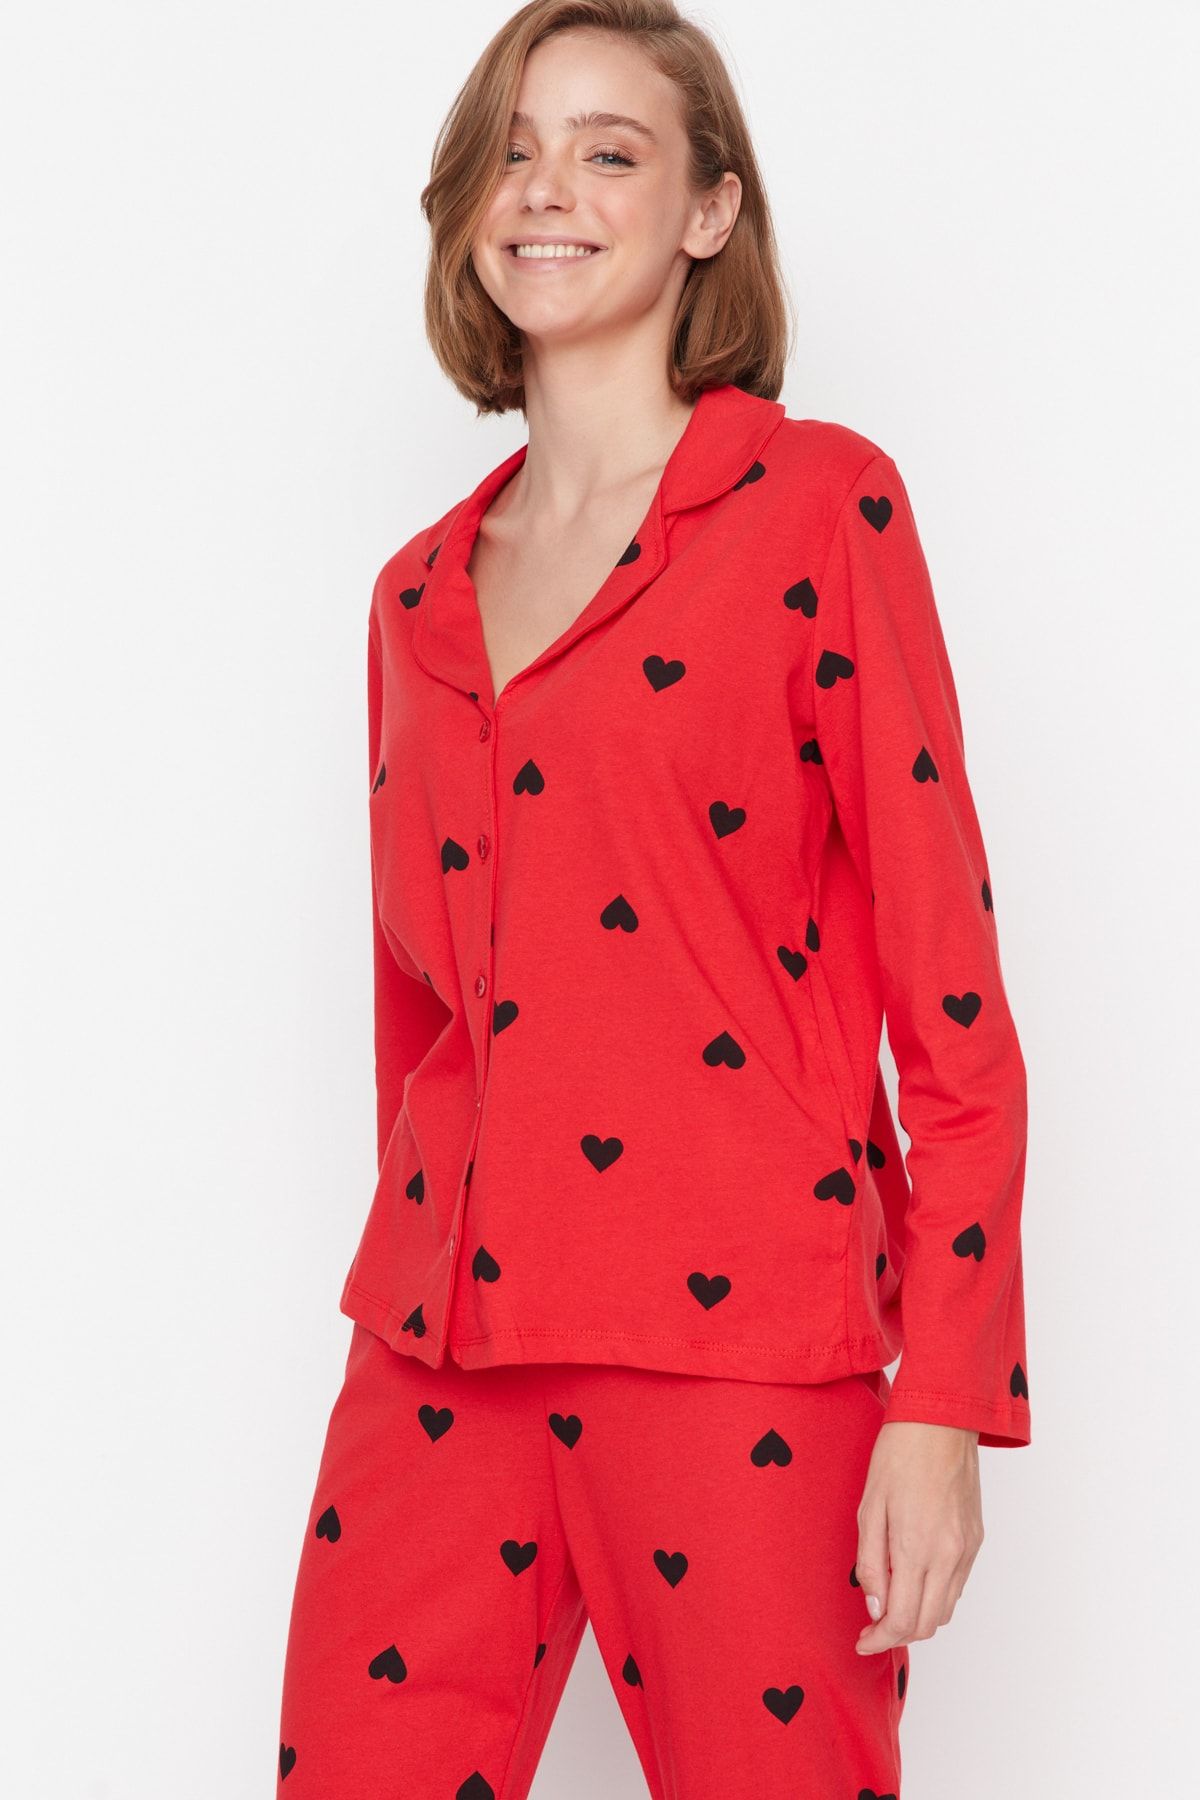 TRENDYOLMİLLA Kırmızı %100 Pamuk Kalp Desenli Gömlek-Pantolon Örme Pijama Takımı THMAW21PT0548